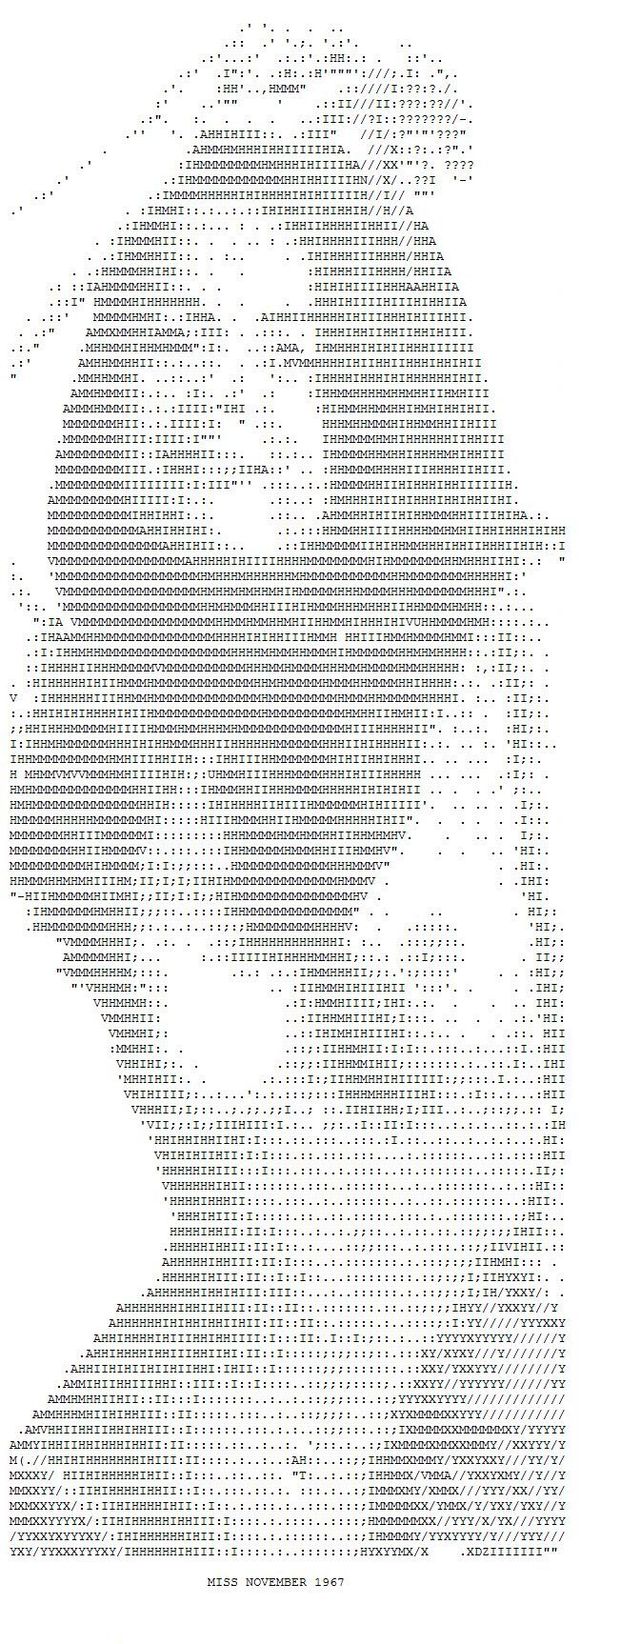 ASCII erotic images - 05